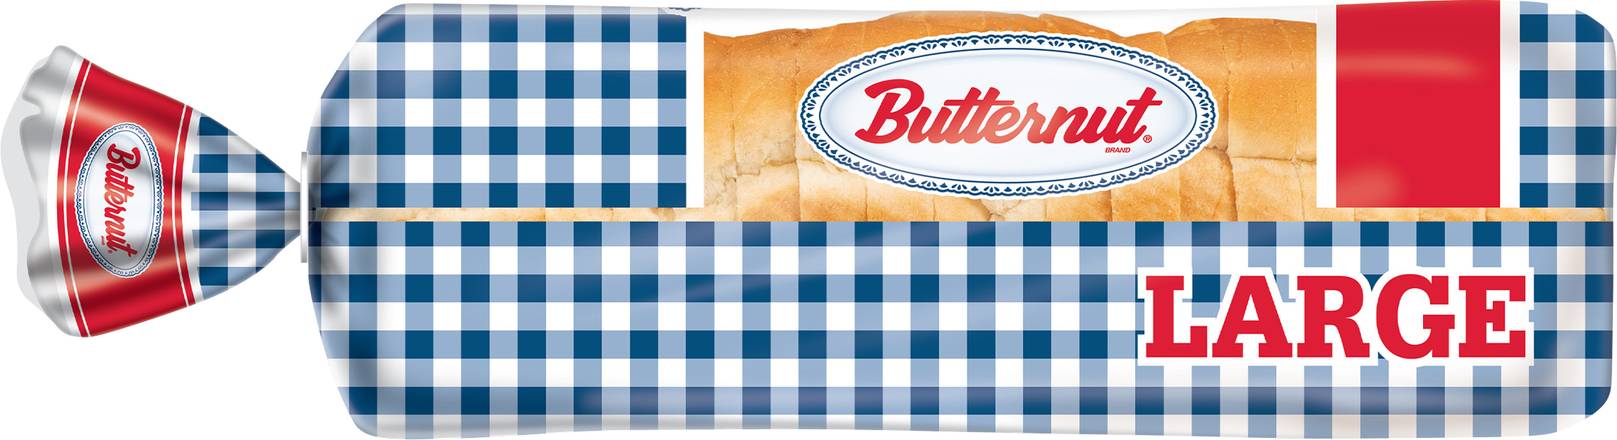 Butternut Large White Sandwich Bread